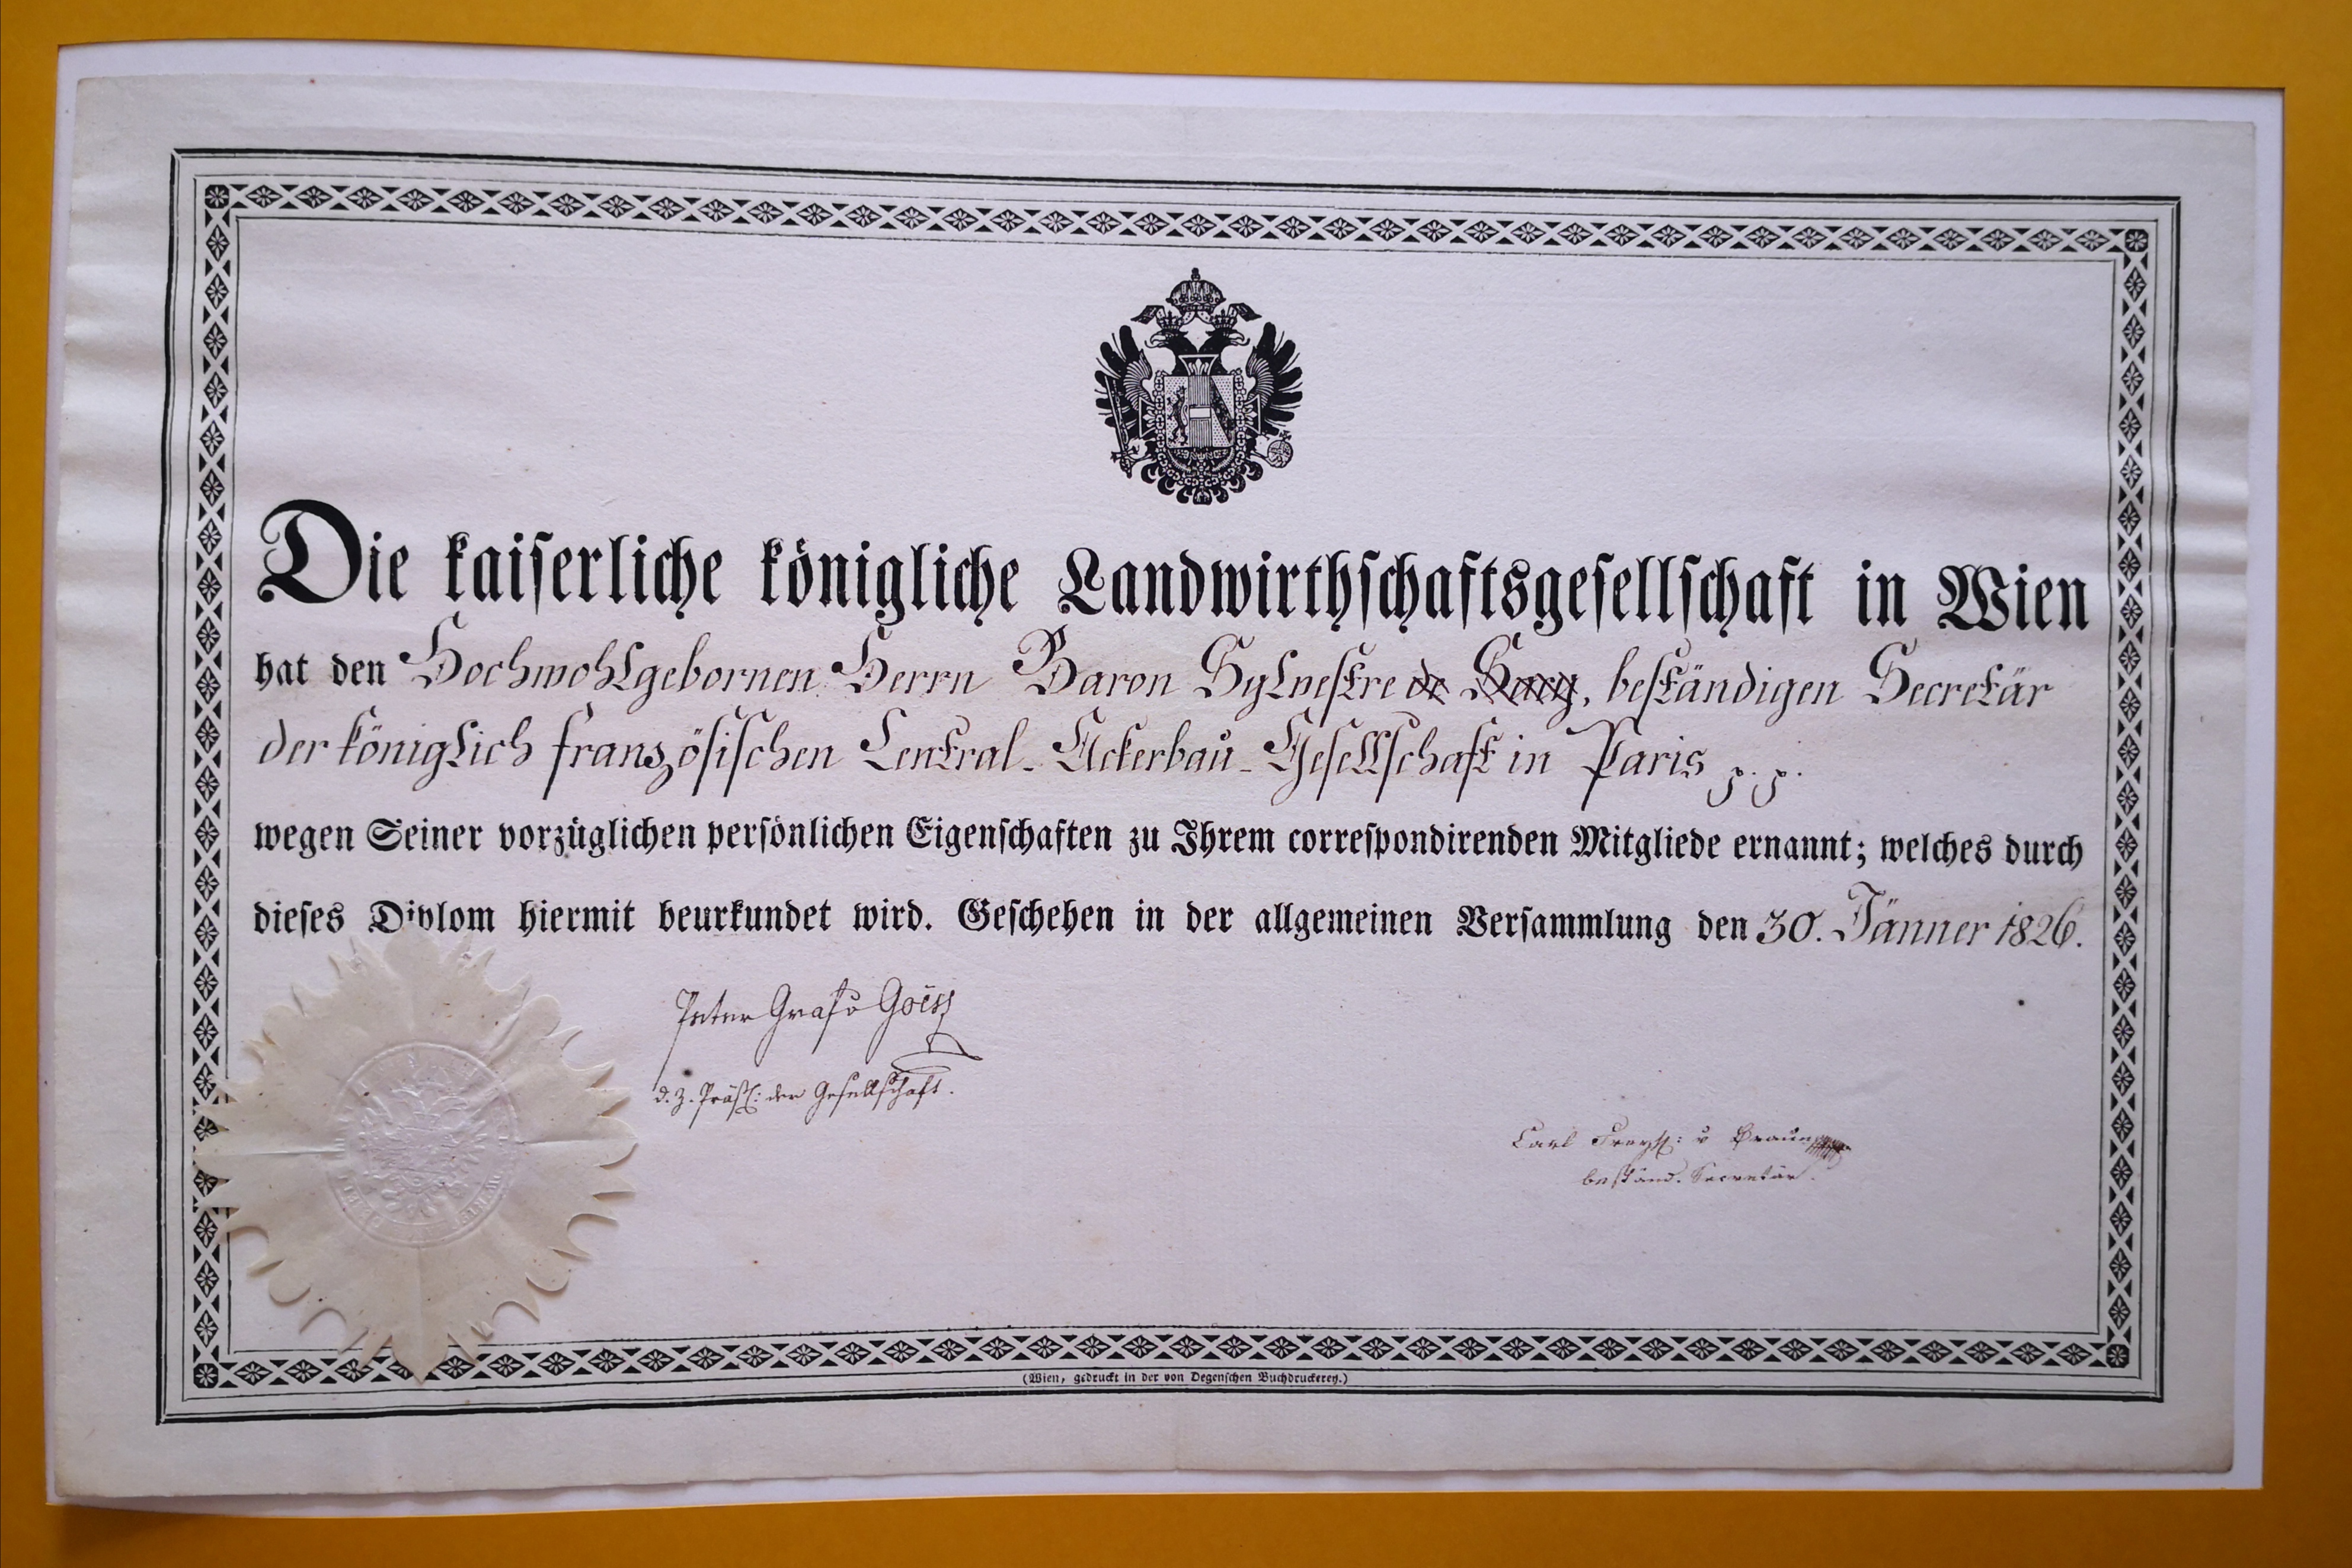  Diplôme de la Kaiserliche Königliche Landwirtchaftsgesellshaft in Wien décerné à Augustin-François de Silvestre - Document 1